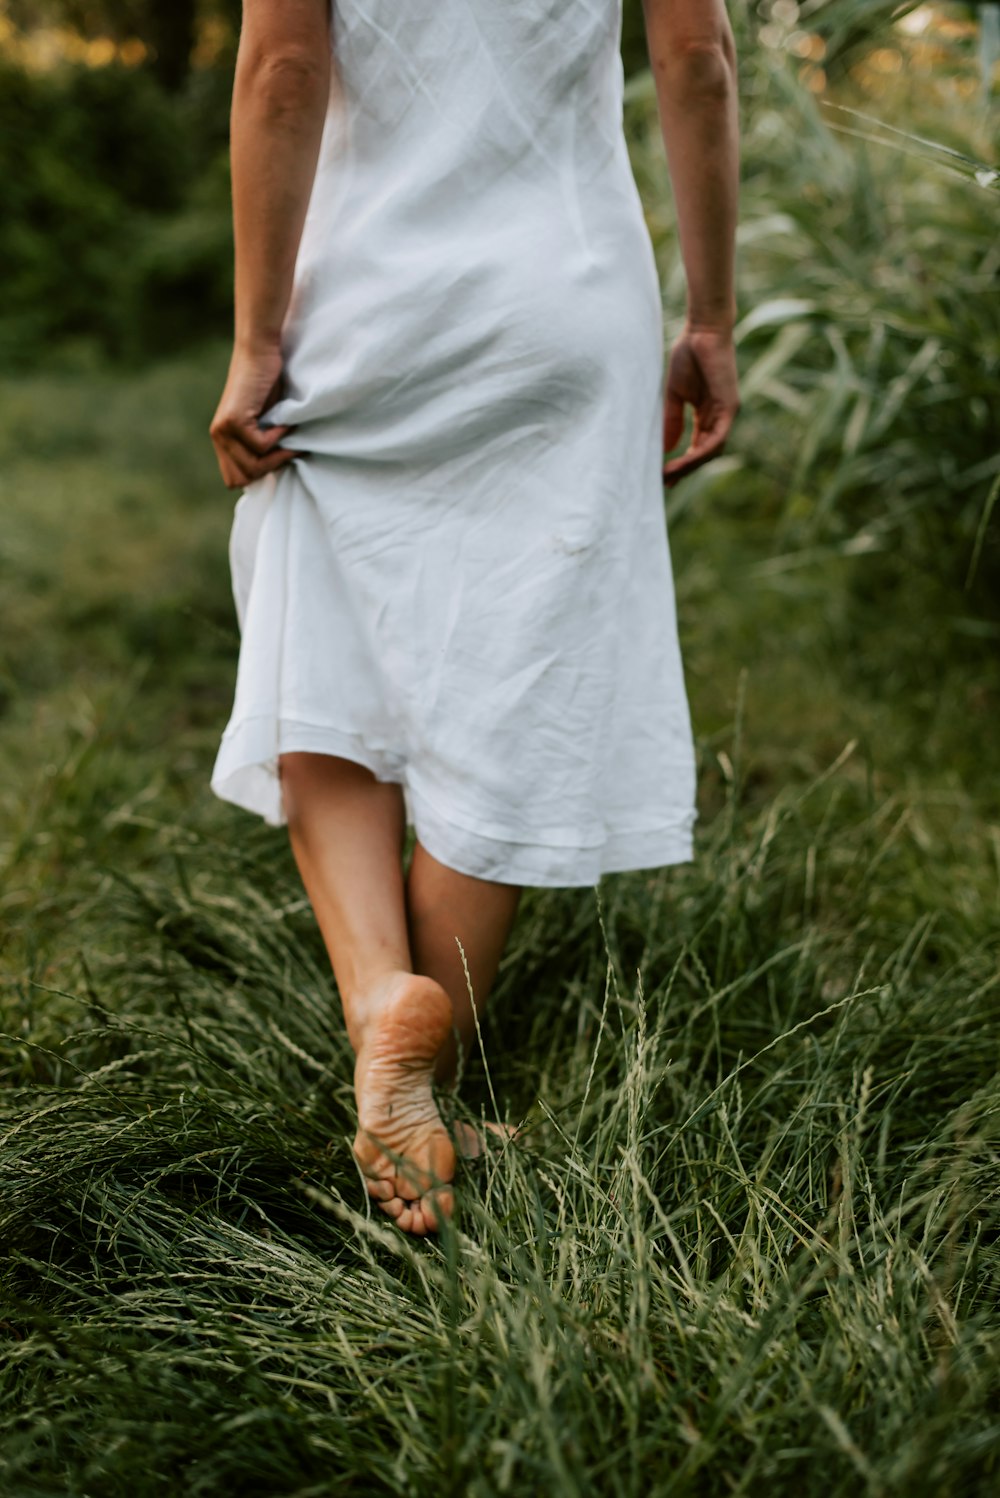 a woman in a white dress walking through tall grass